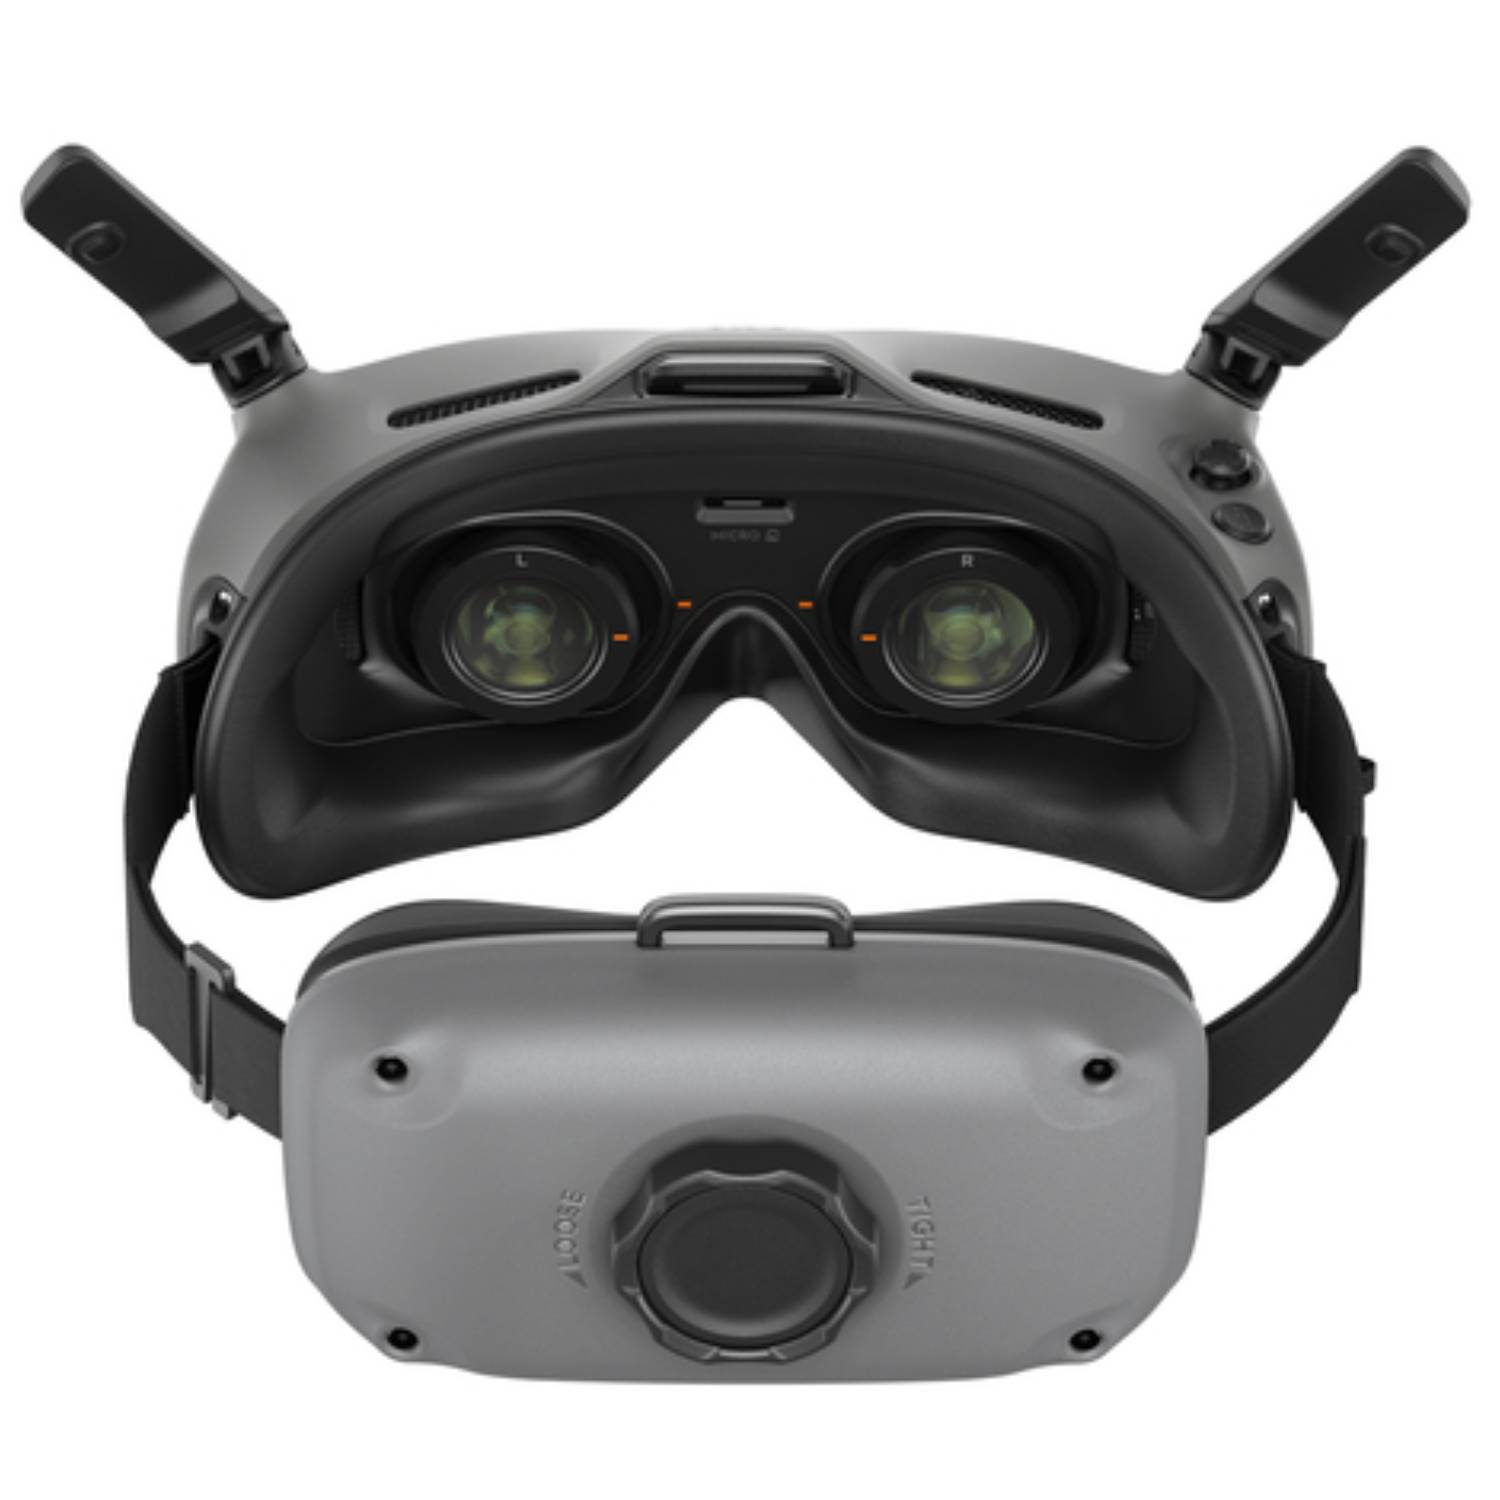 DJI Goggles Integra VR Brille